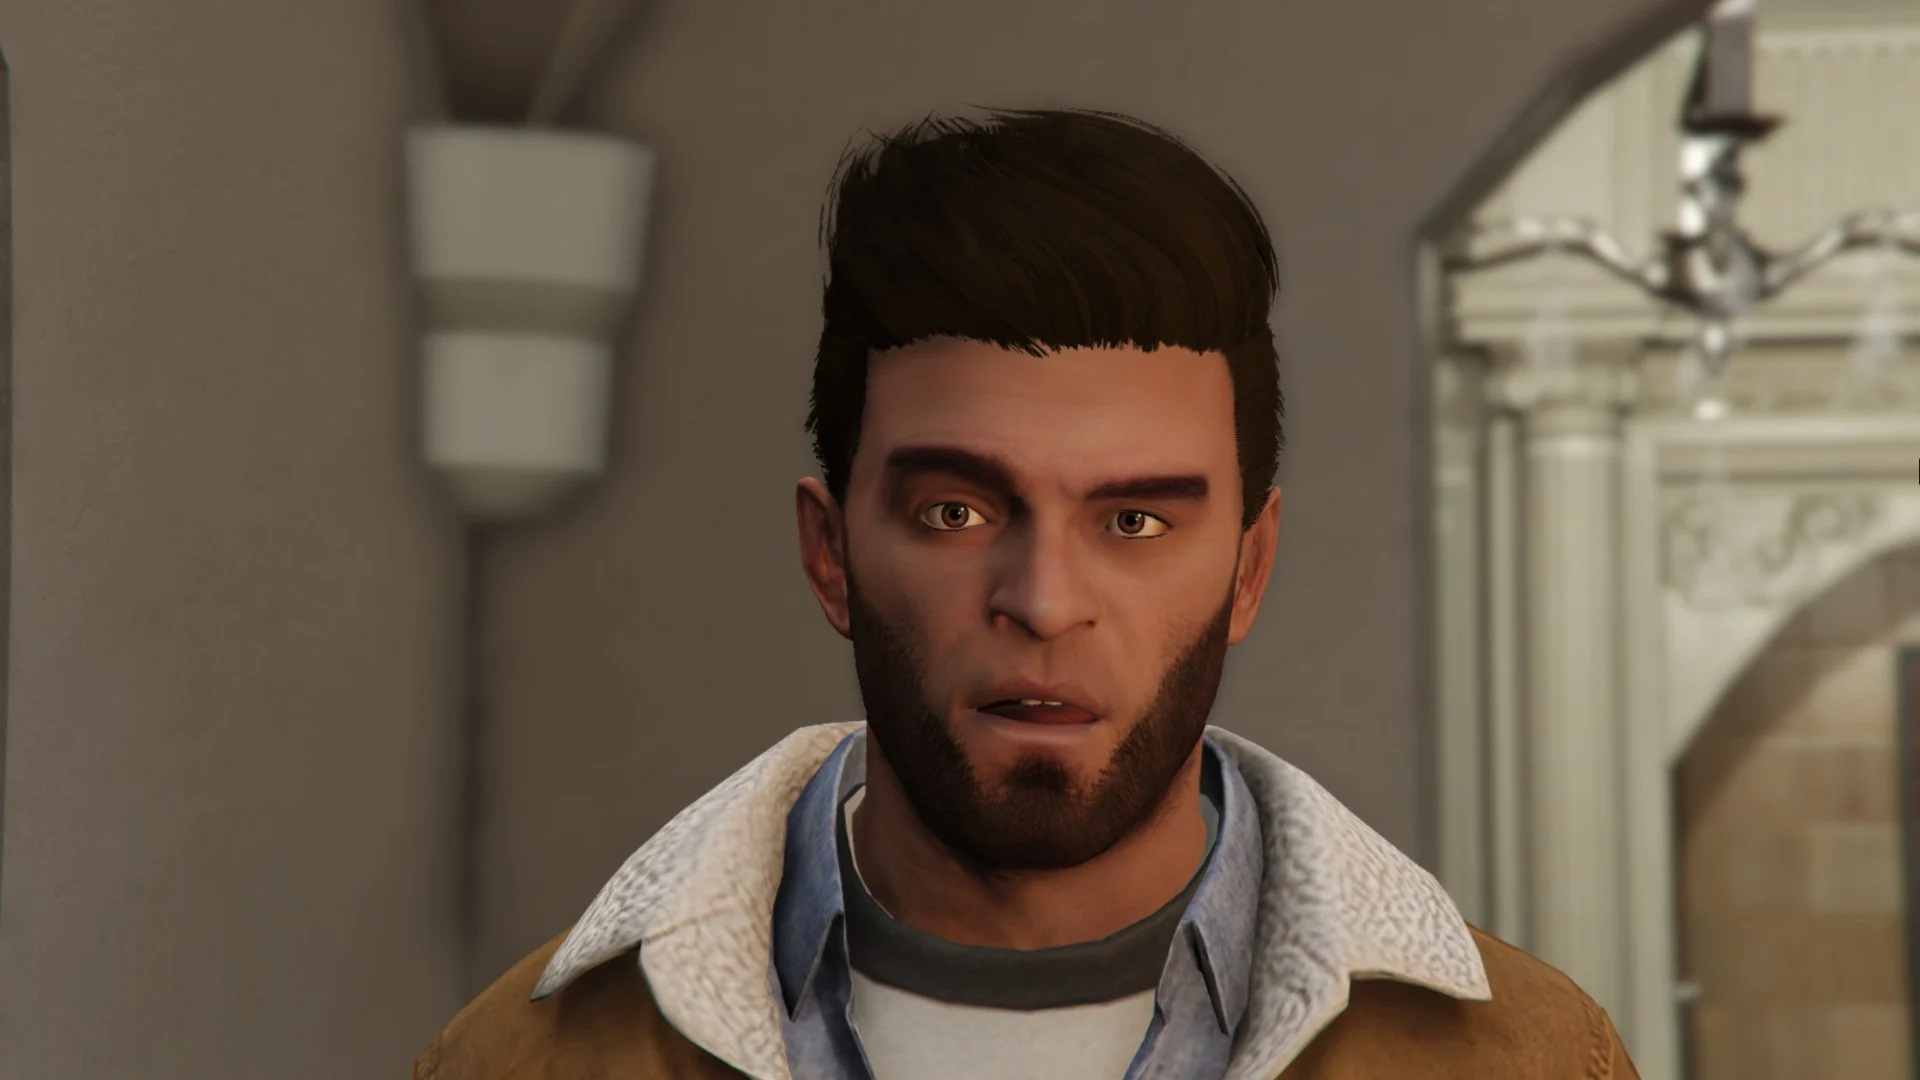 Better Trevor Phillips (Face, Beard & Hair) – GTA 5 mod